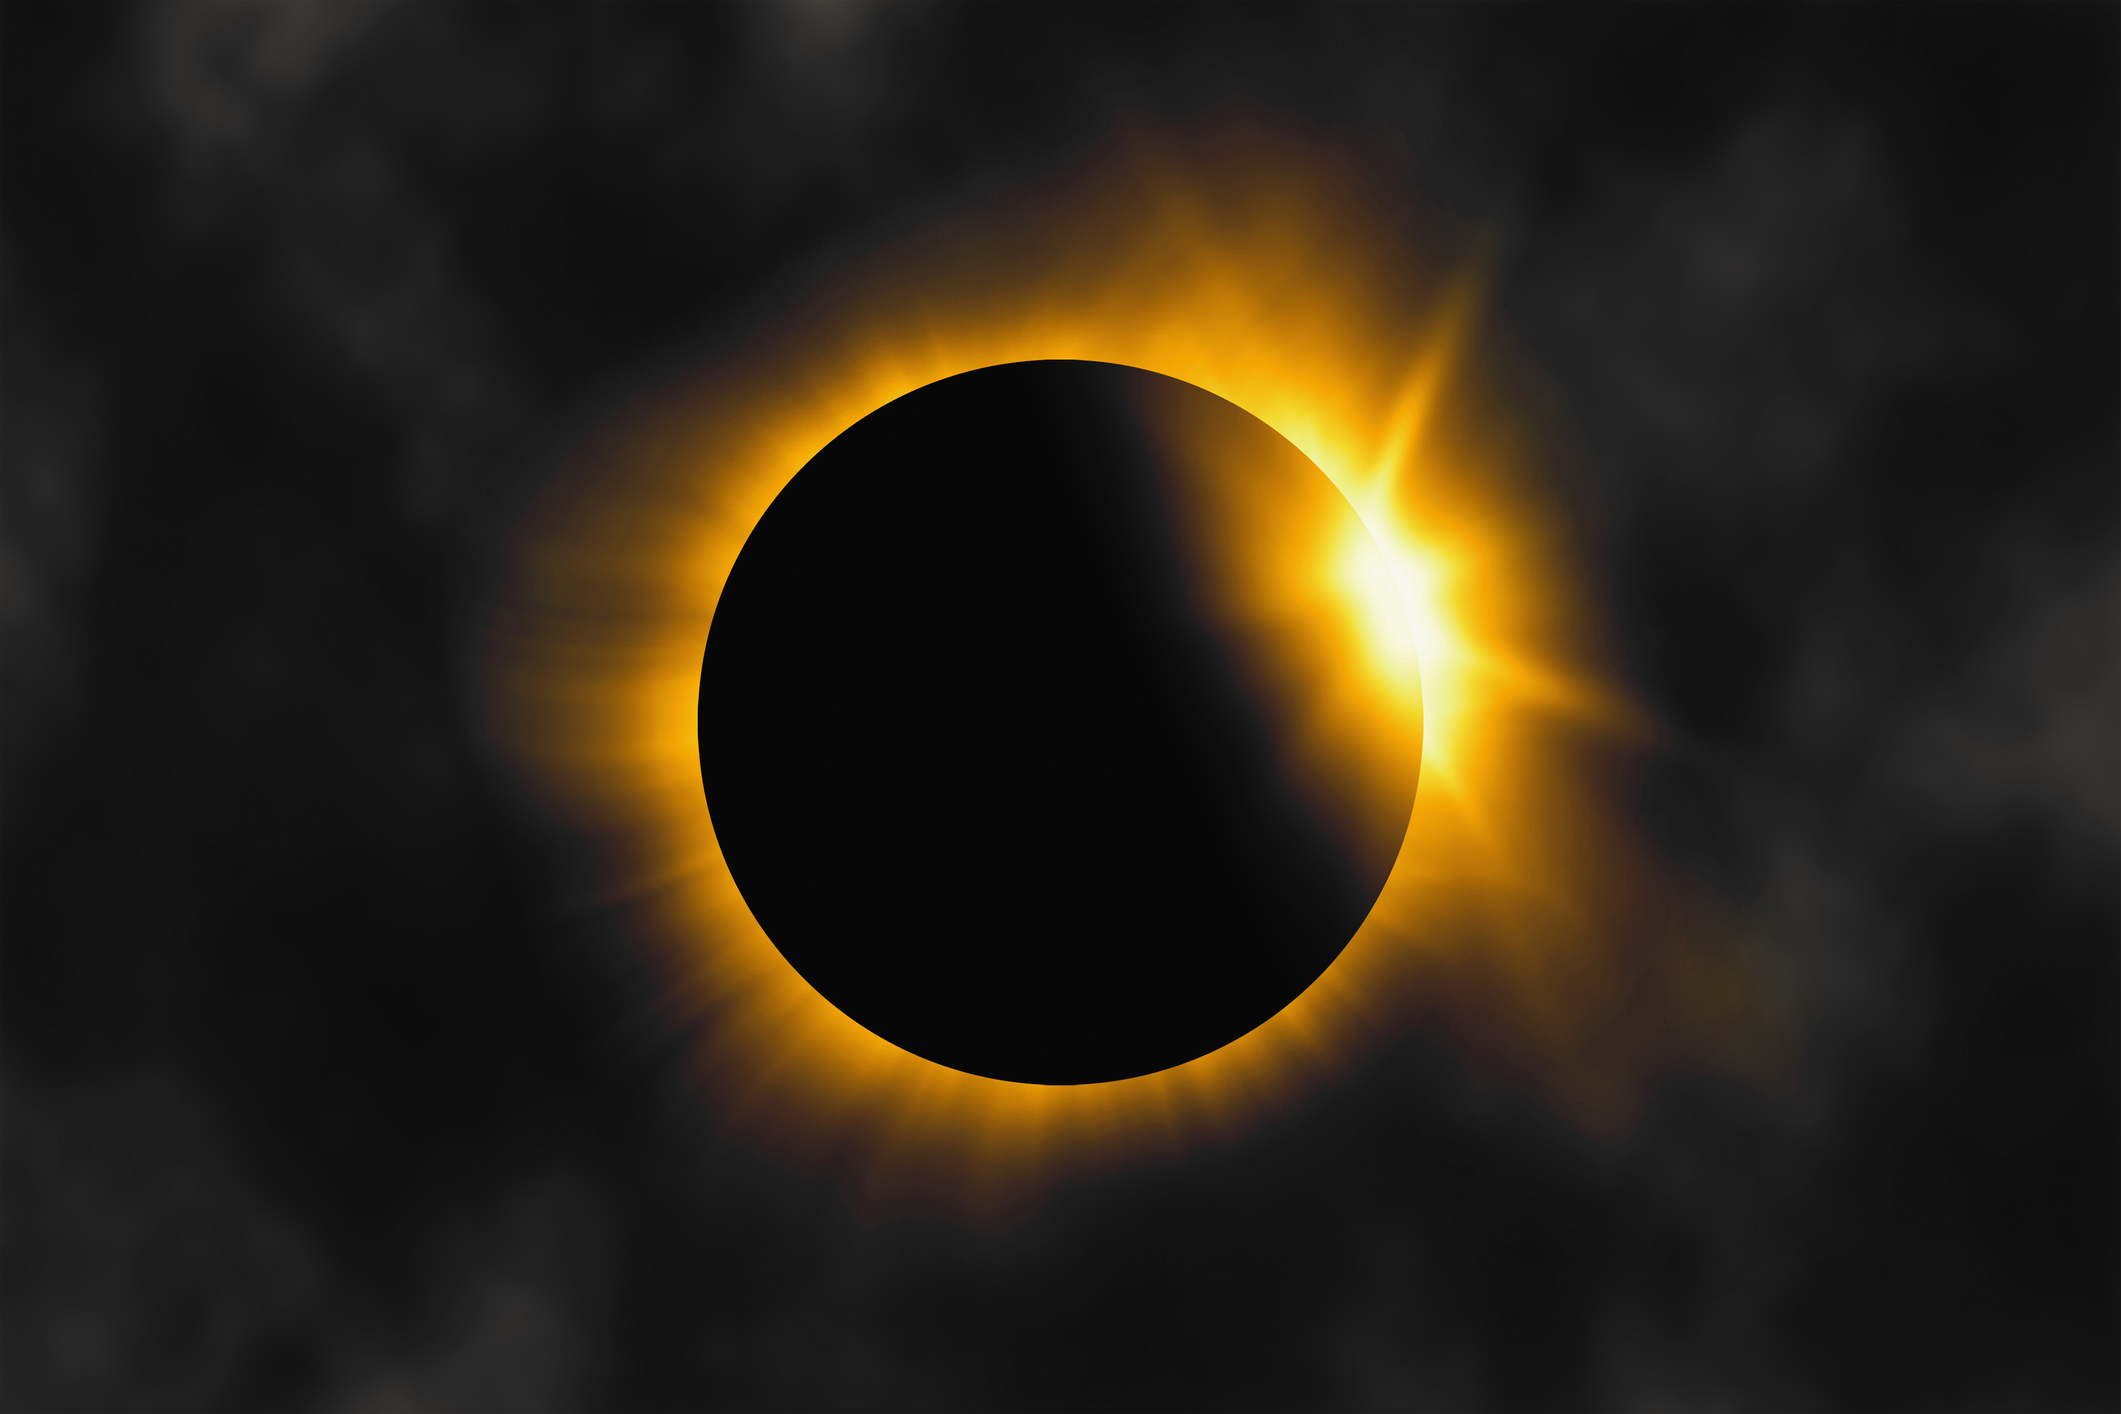 Éclipse solaire totale, couronne solaire visible. Science et observation spatiale.